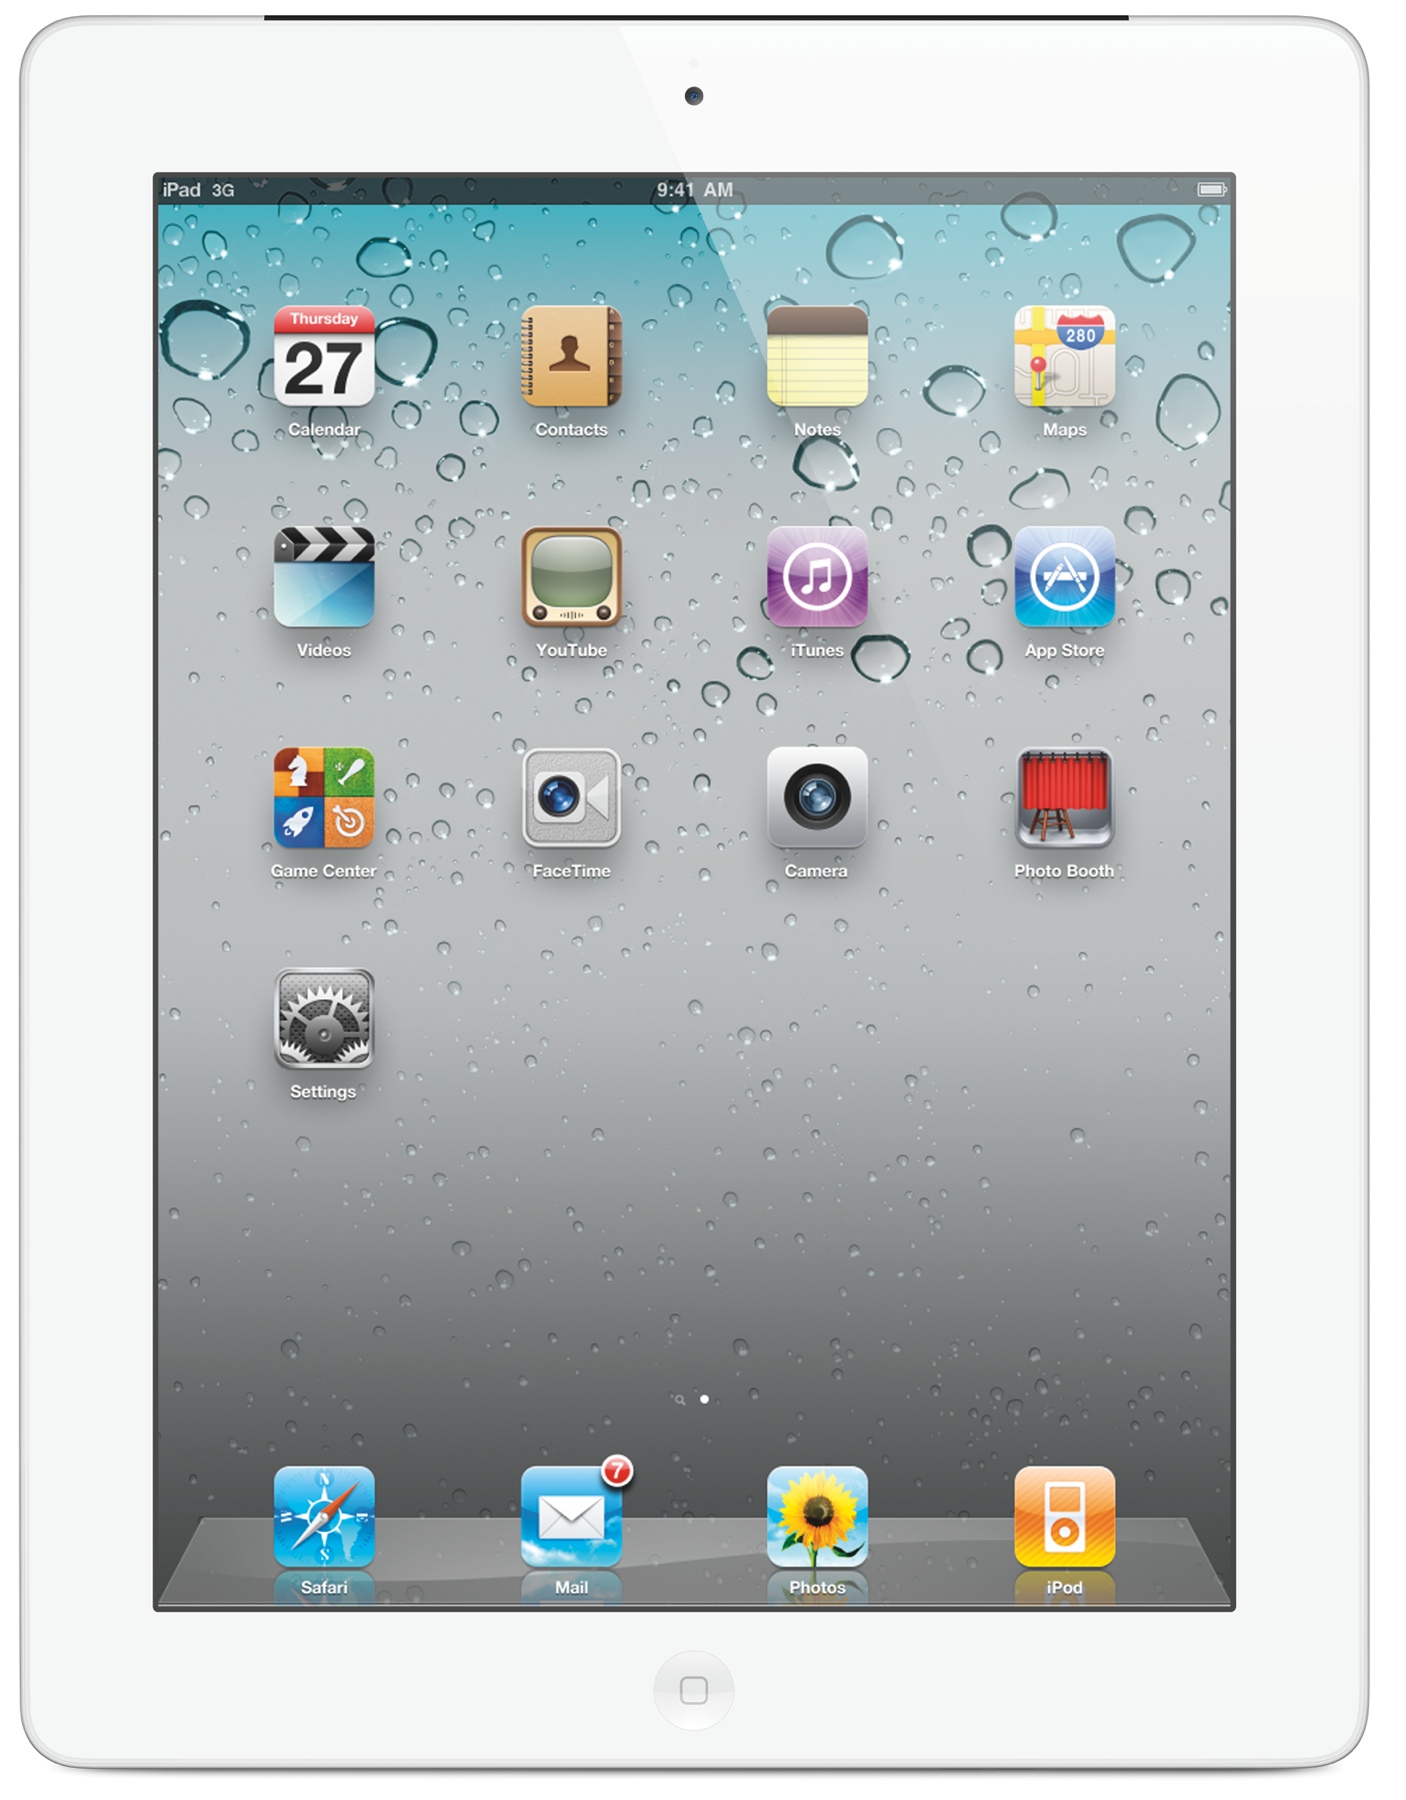 صور موبايل  Apple iPad2 3G 32GB Wi-Fi 2012 -Pictures Mobile Apple iPad2 3G 32GB Wi-Fi 2012